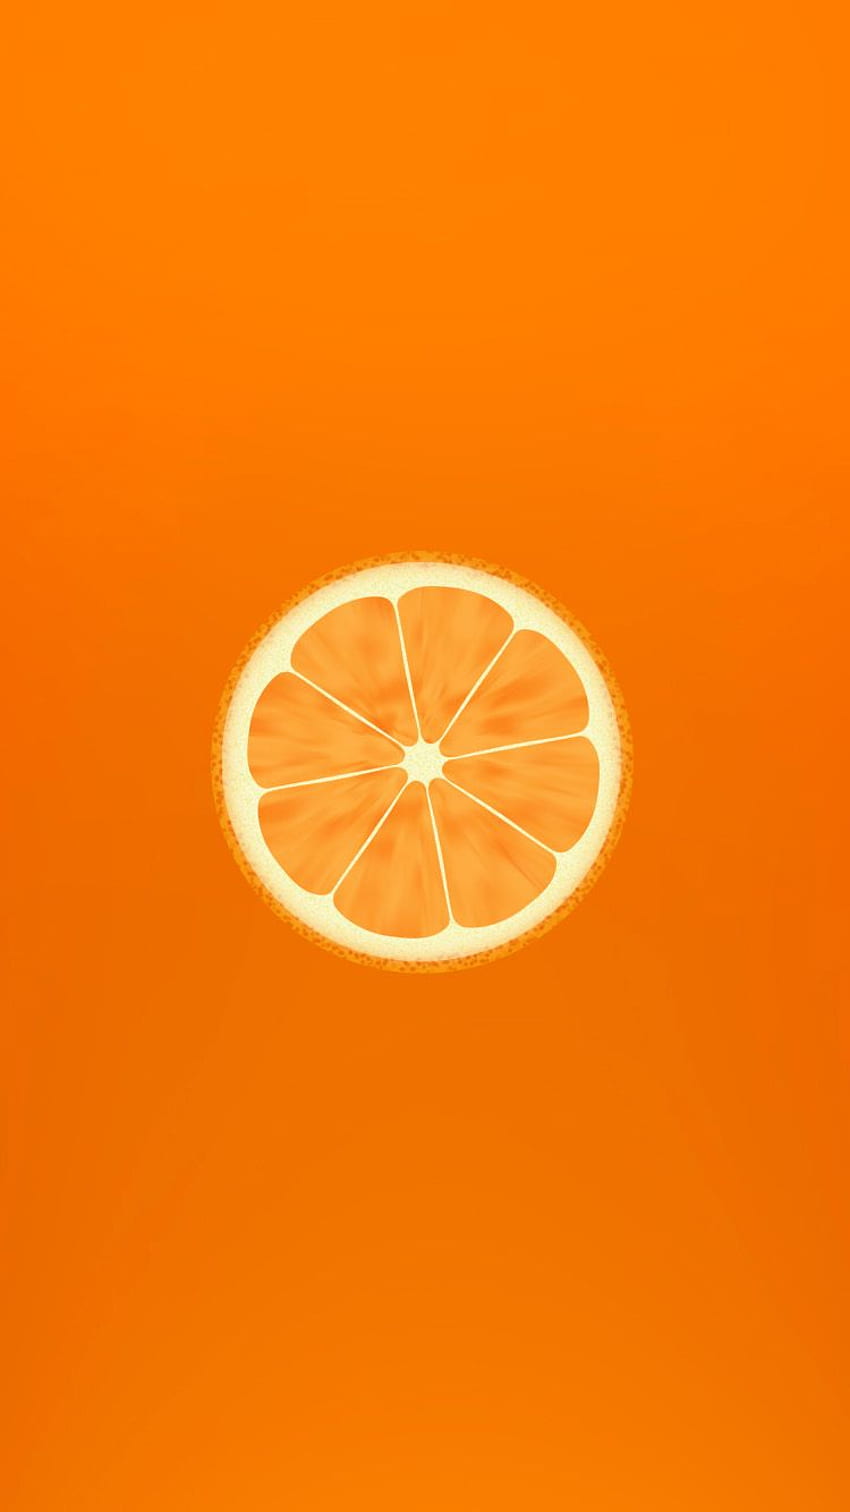 iPhone de fruta naranja, fruta linda fondo de pantalla del teléfono